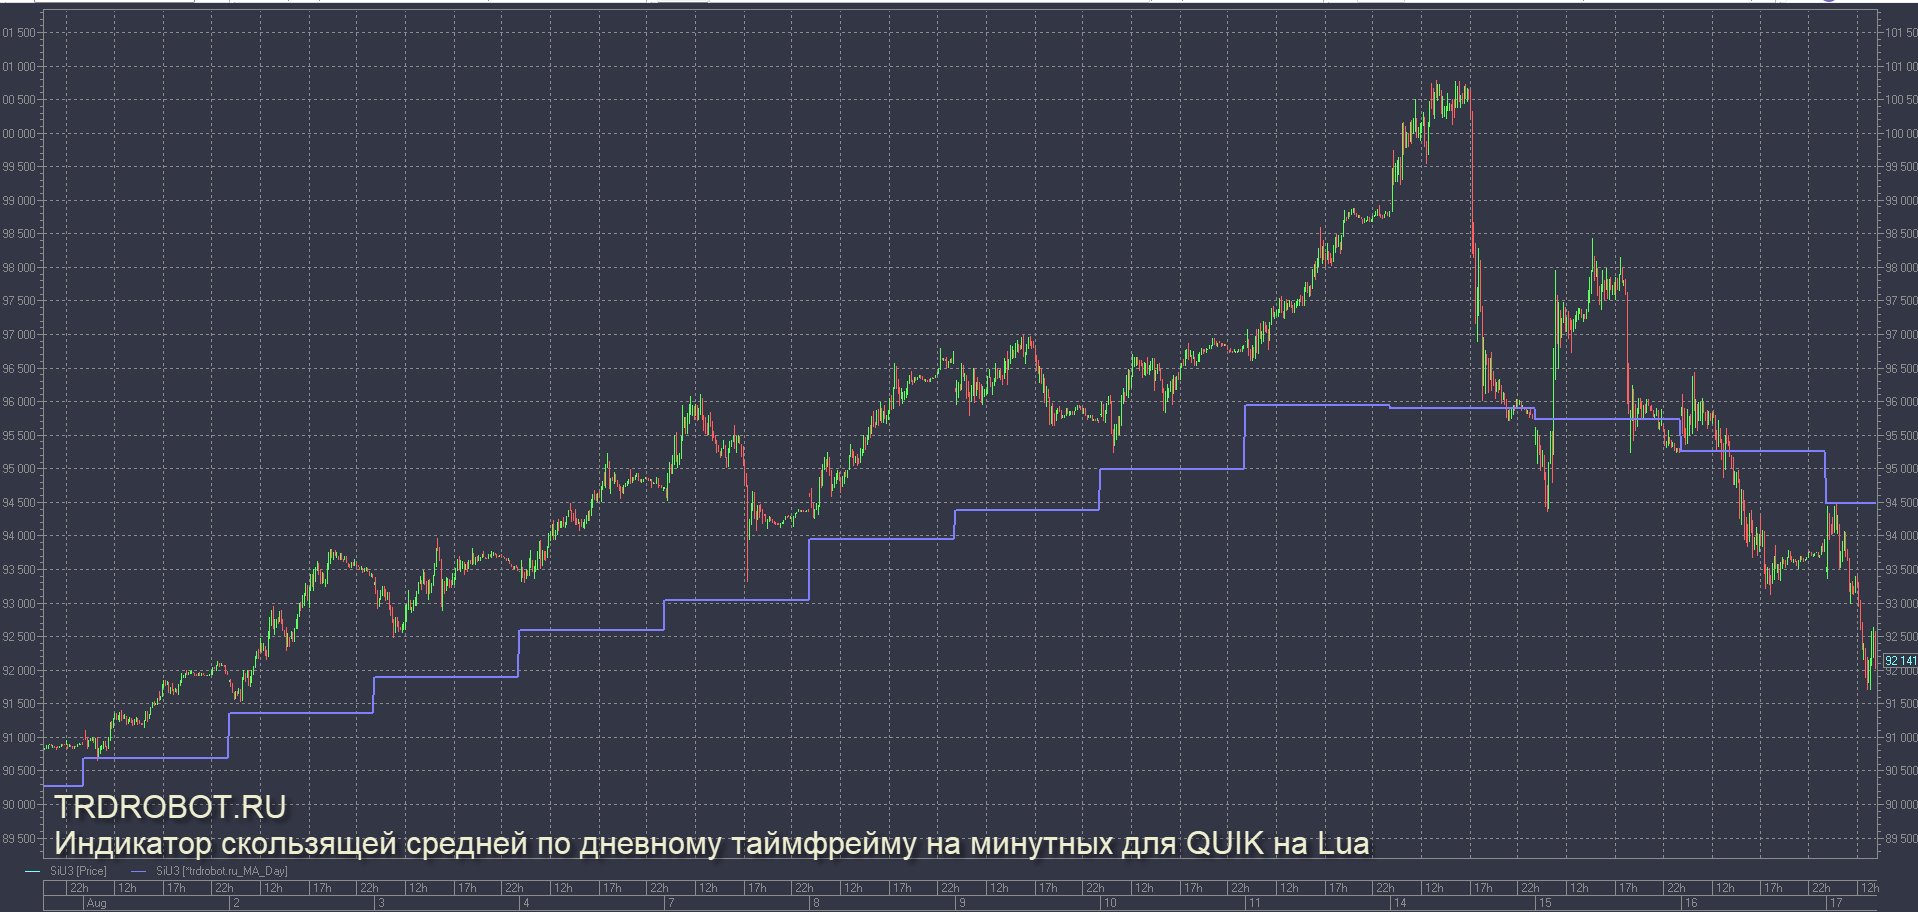 Индикатор скользящей средней на минутках по дневному таймфрейму для QUIK на Lua